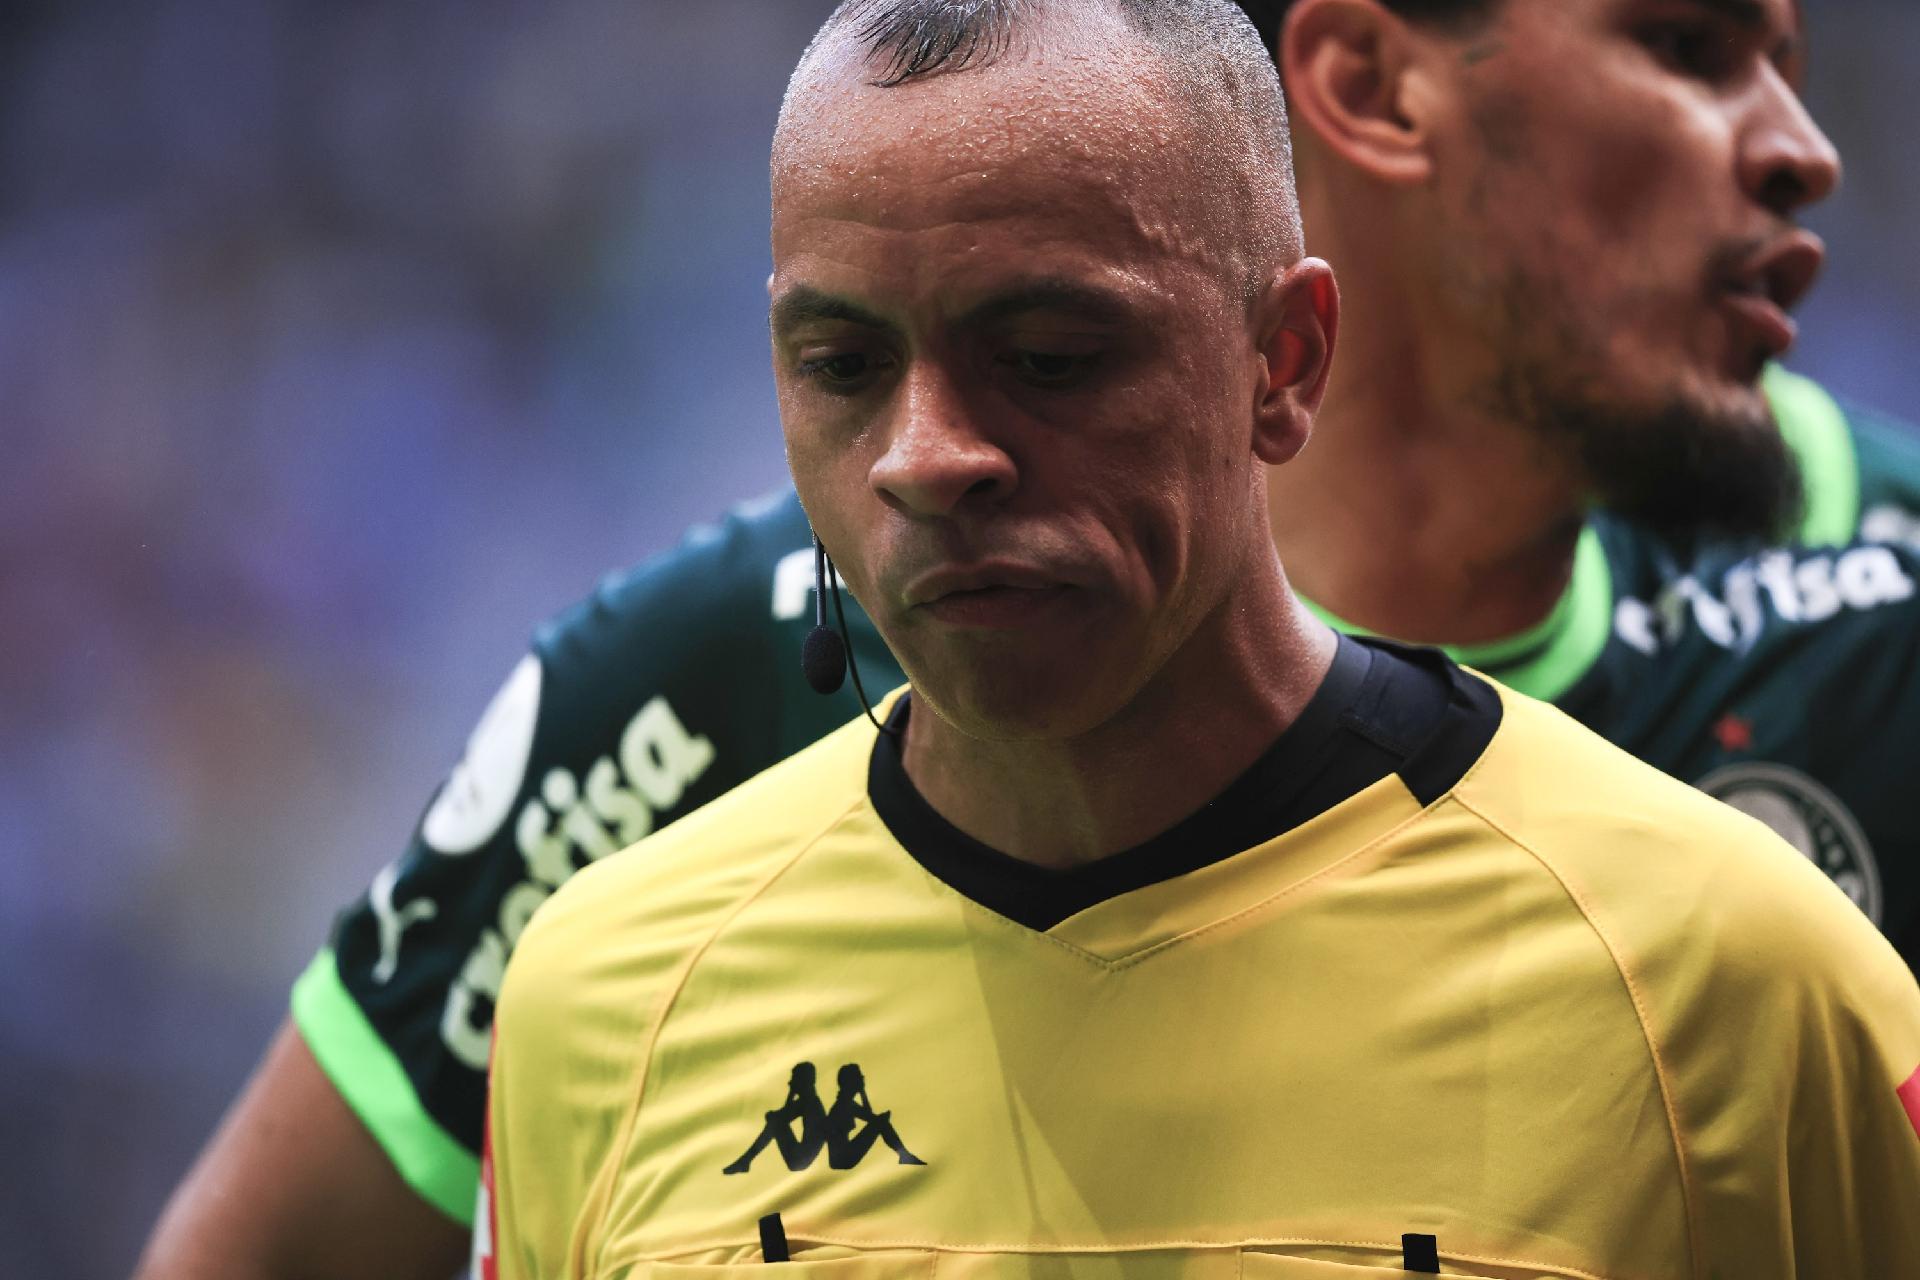 Ficou na roda, passaram vergonha, comentarista analisa atuação do  Palmeiras contra o Flamengo - Coluna do Fla